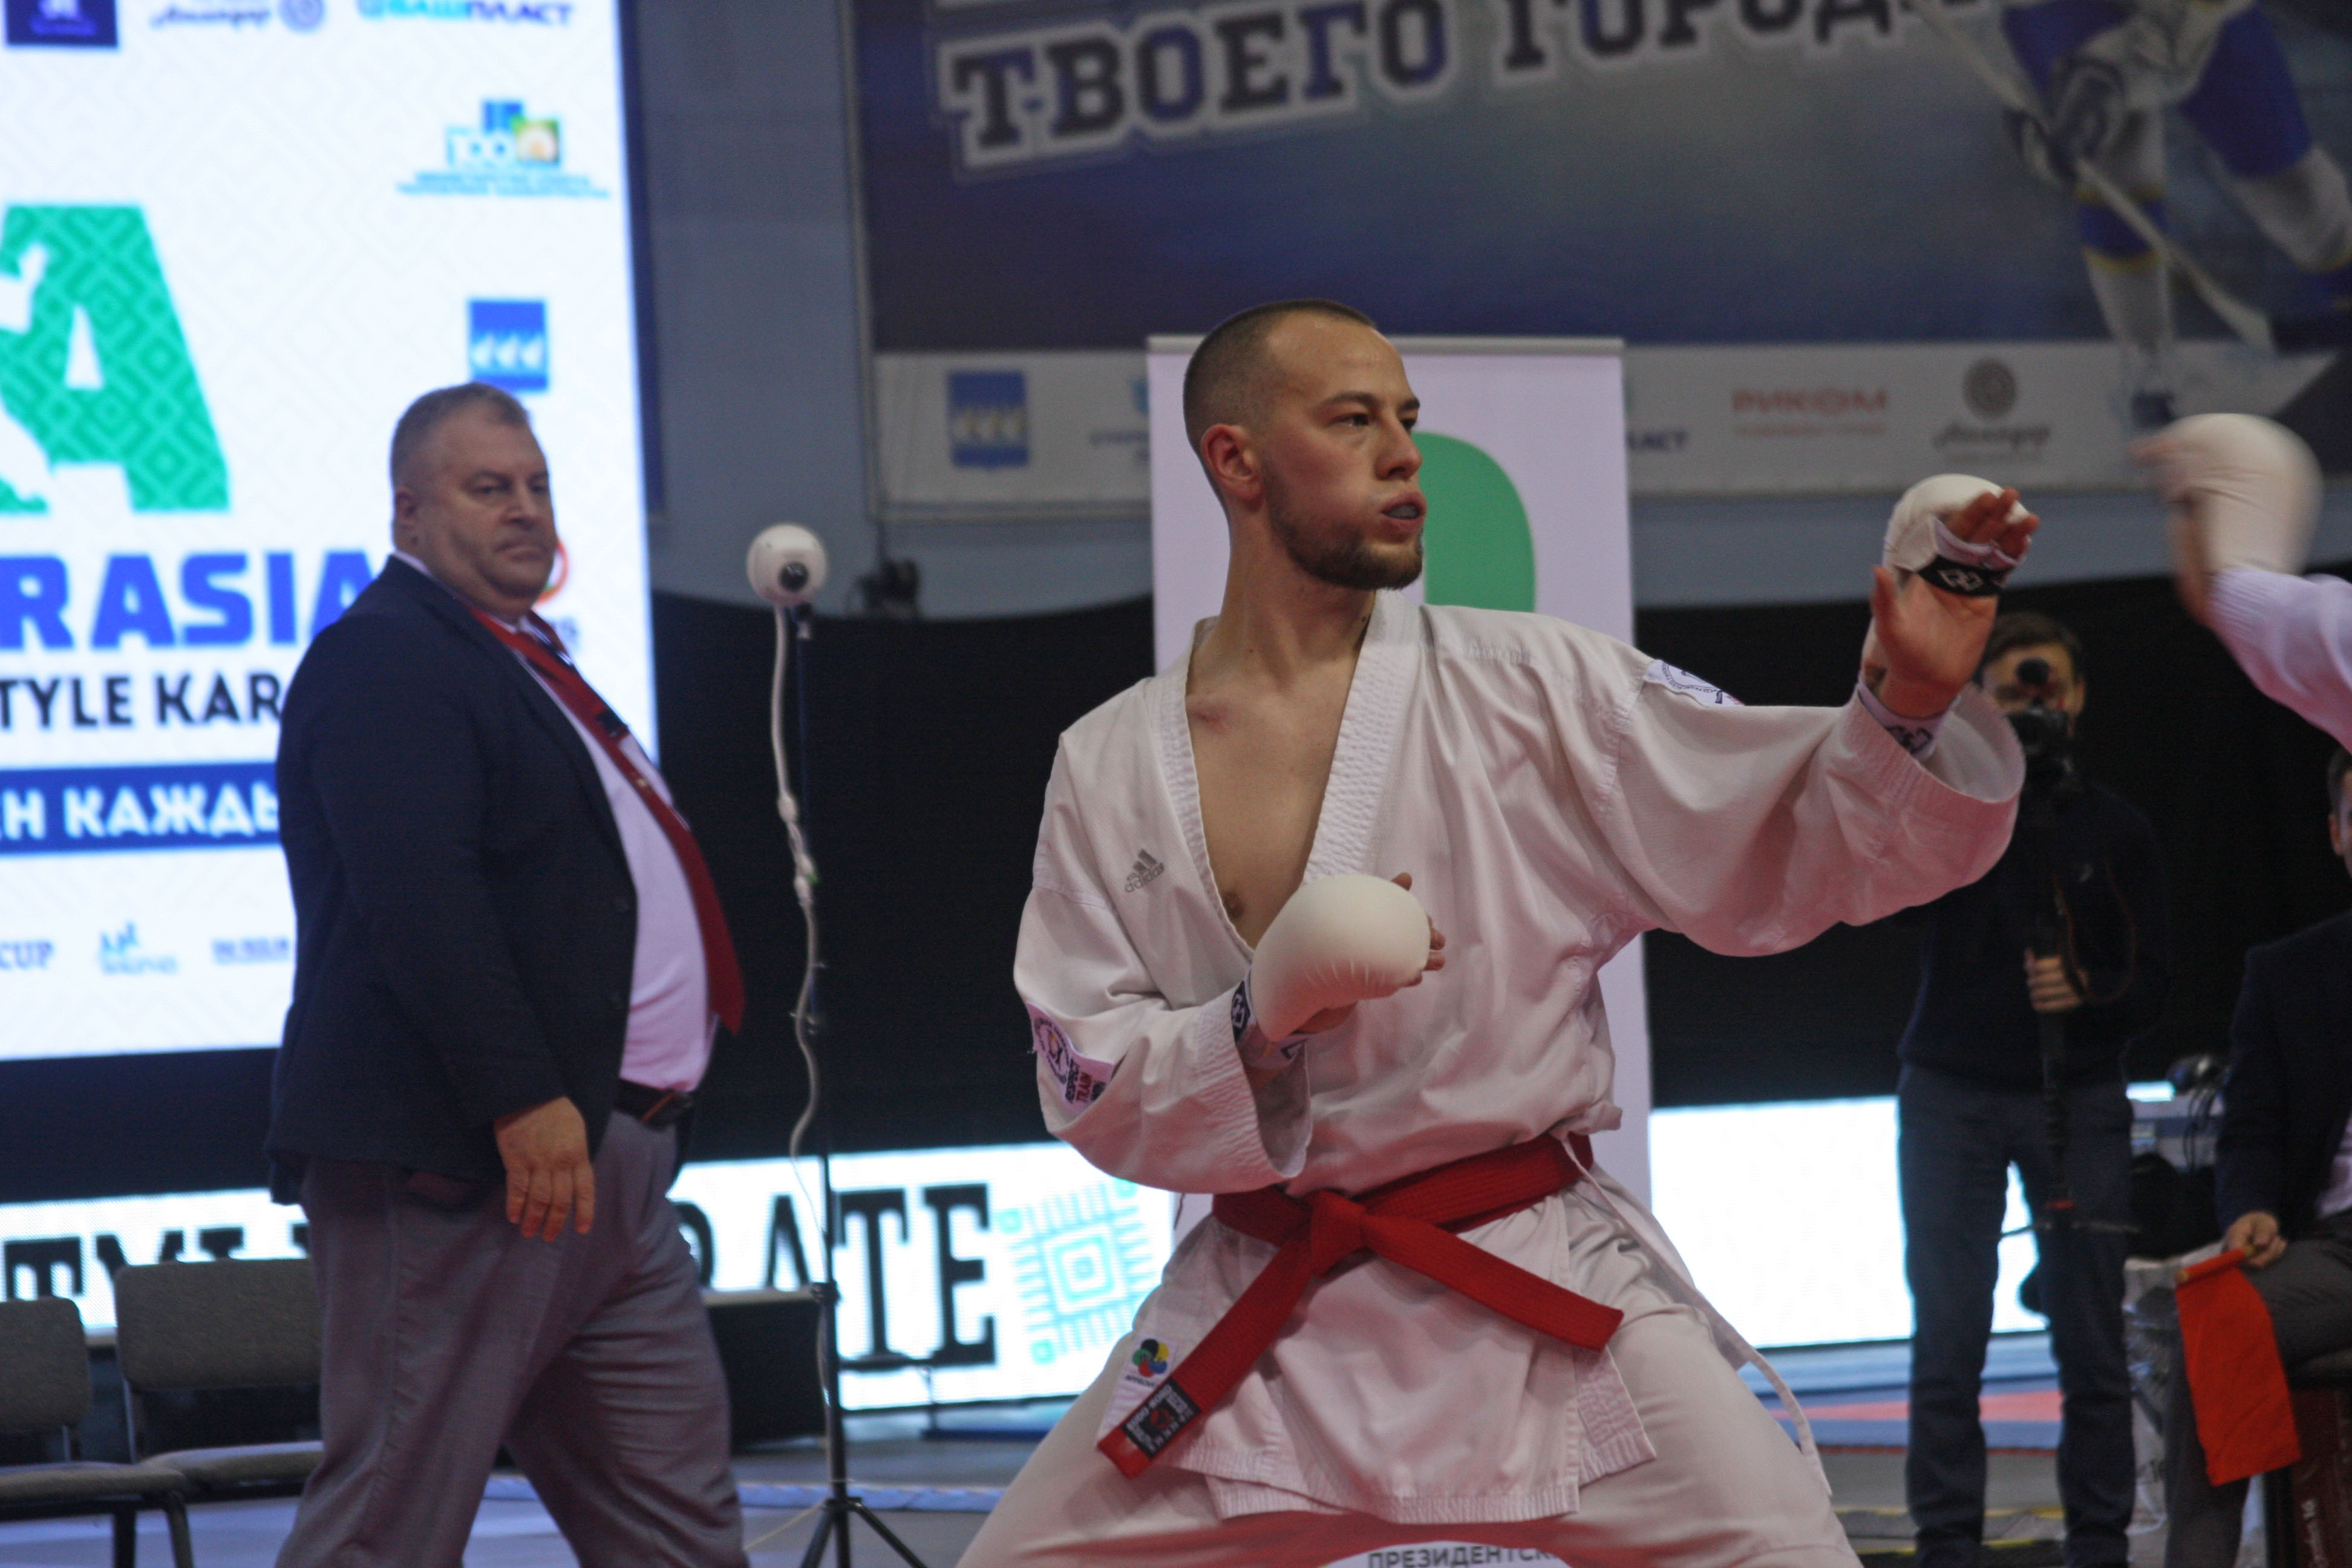 В Стерлитамаке проходят IX Международные соревнования по всестилевому каратэ "EurAsiaCup"